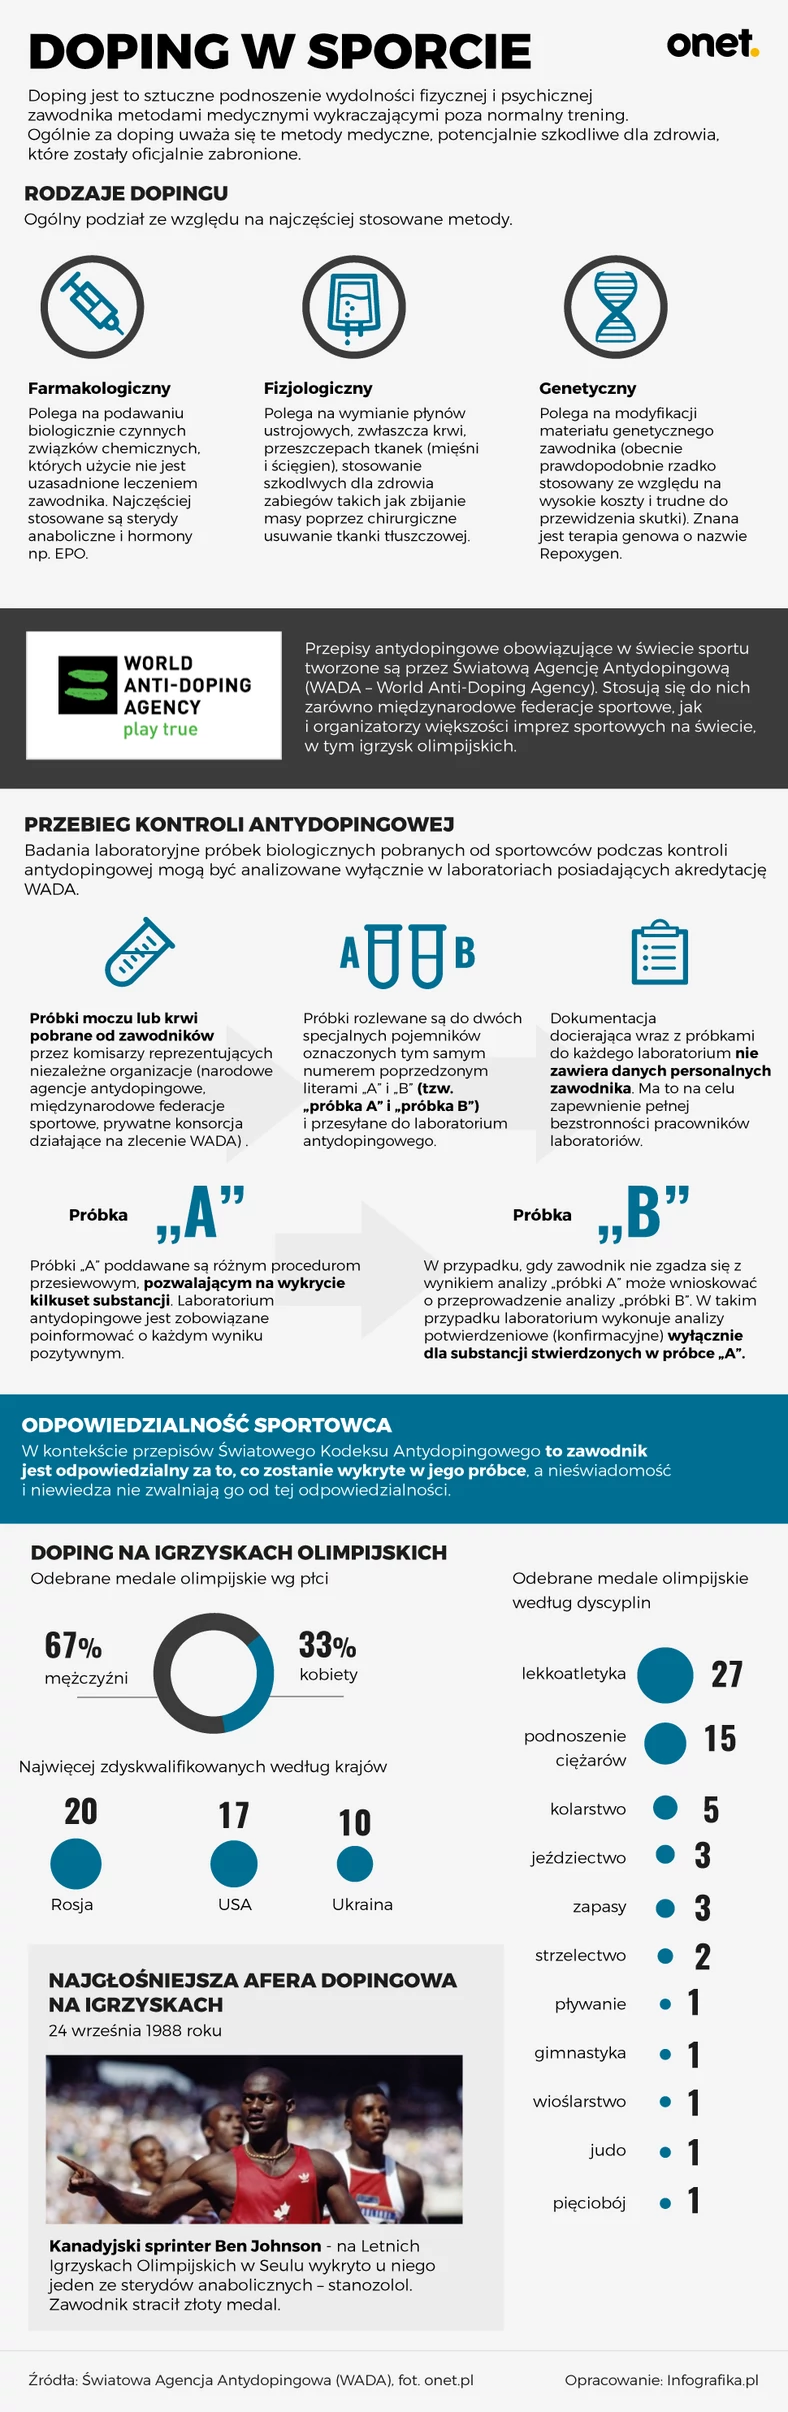 Doping w sporcie - infografika